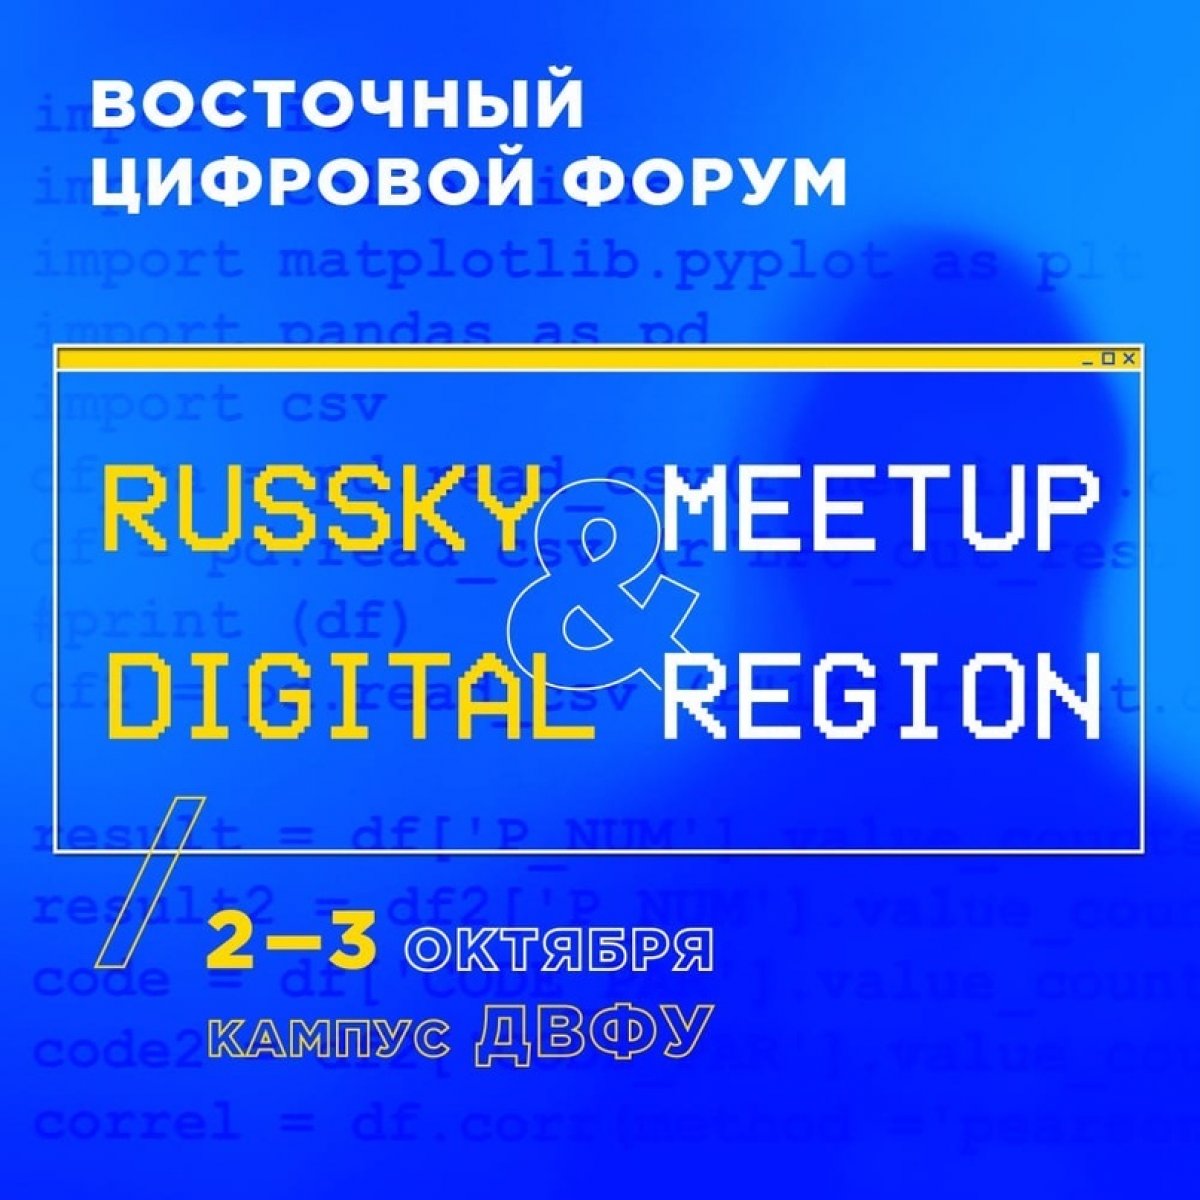 2-3 октября в кампусе пройдет Russky MeetUp и стратегическая сессия Digital Region. На два дня кампус ДВФУ станет местом встречи представителей власти и высокотехнологичного бизнеса, разработчиков и авторов прорывных IT-проектов